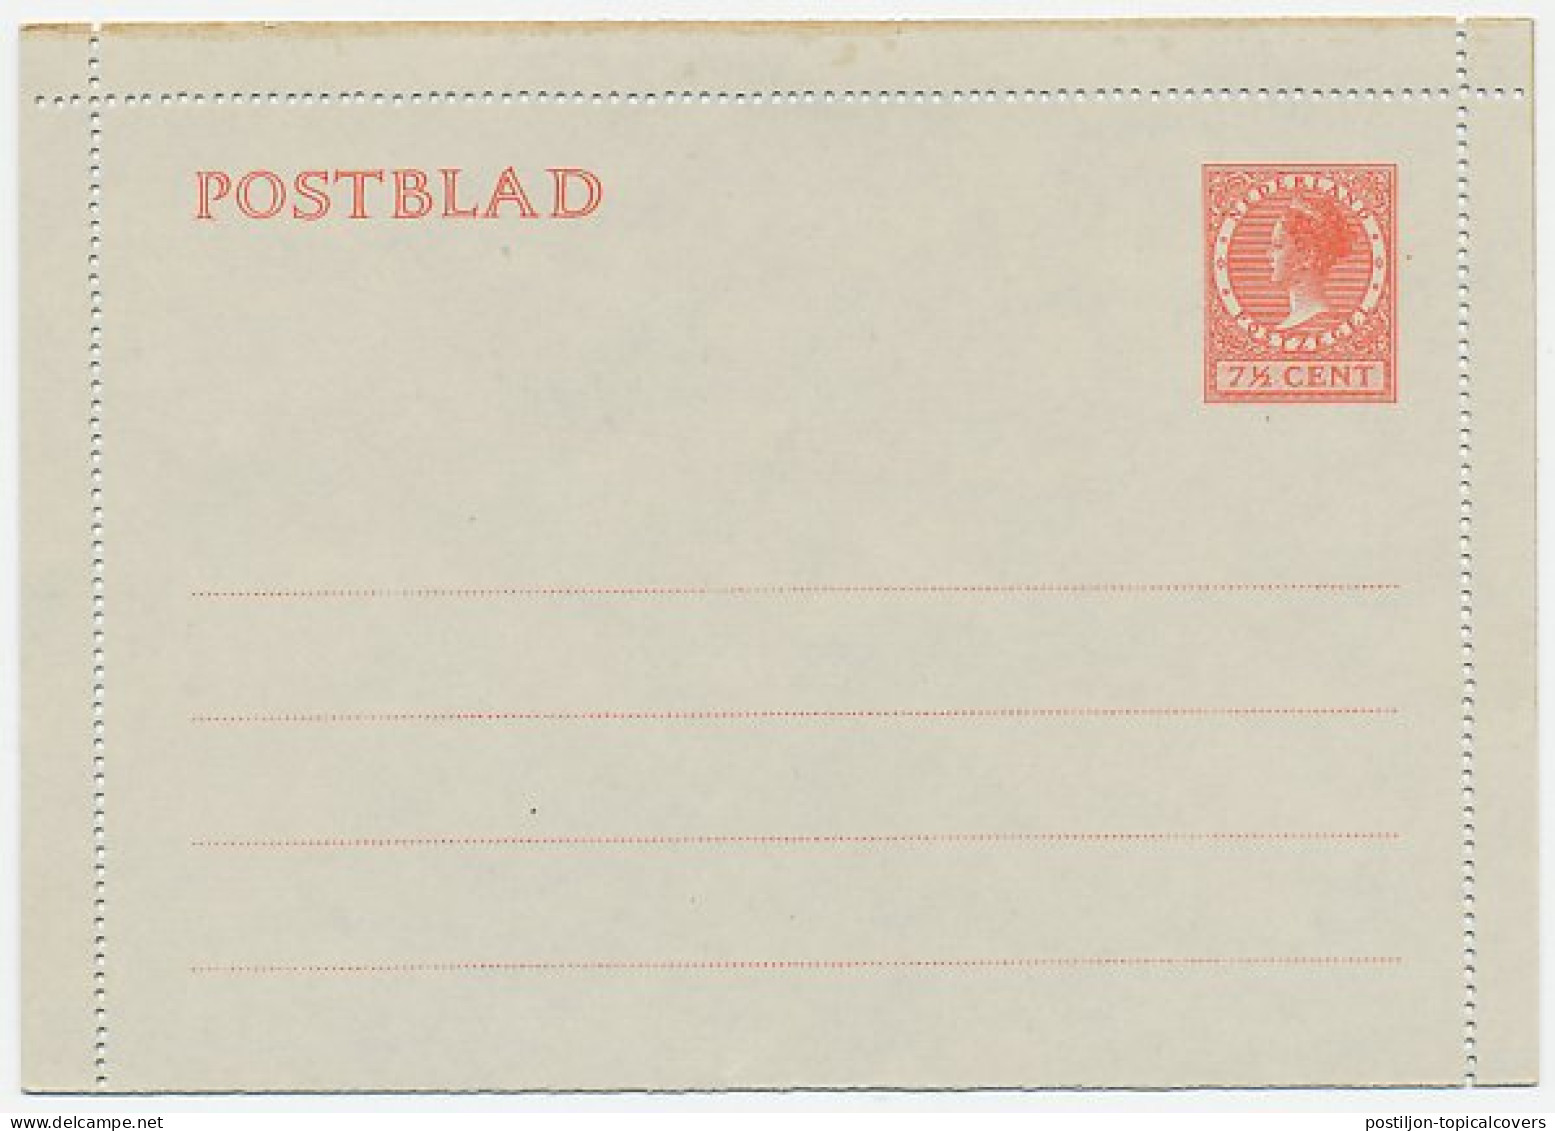 Postblad G. 16 - Ganzsachen